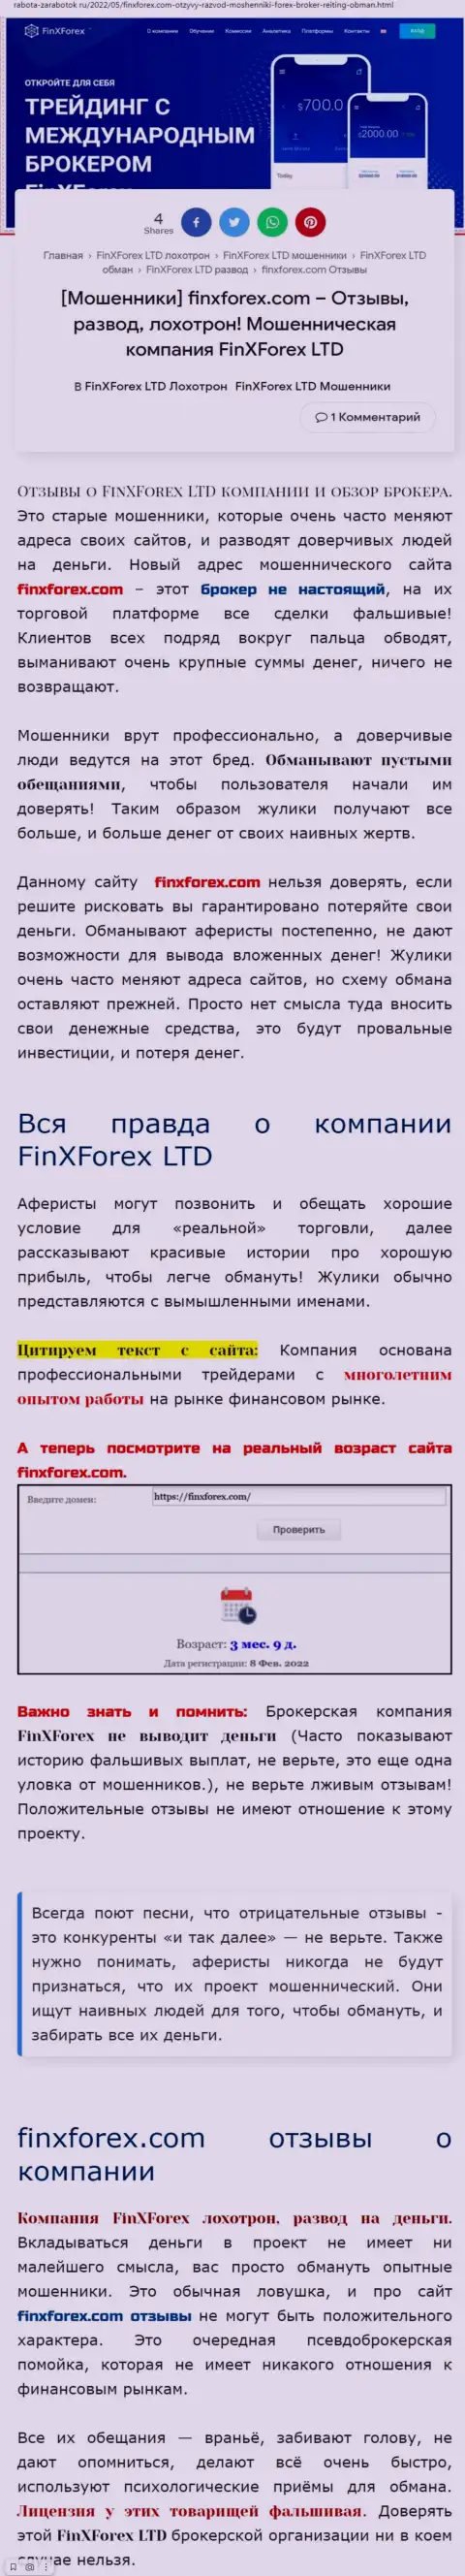 Автор обзора об FinXForex Com говорит, что в организации Фин Икс Форекс жульничают